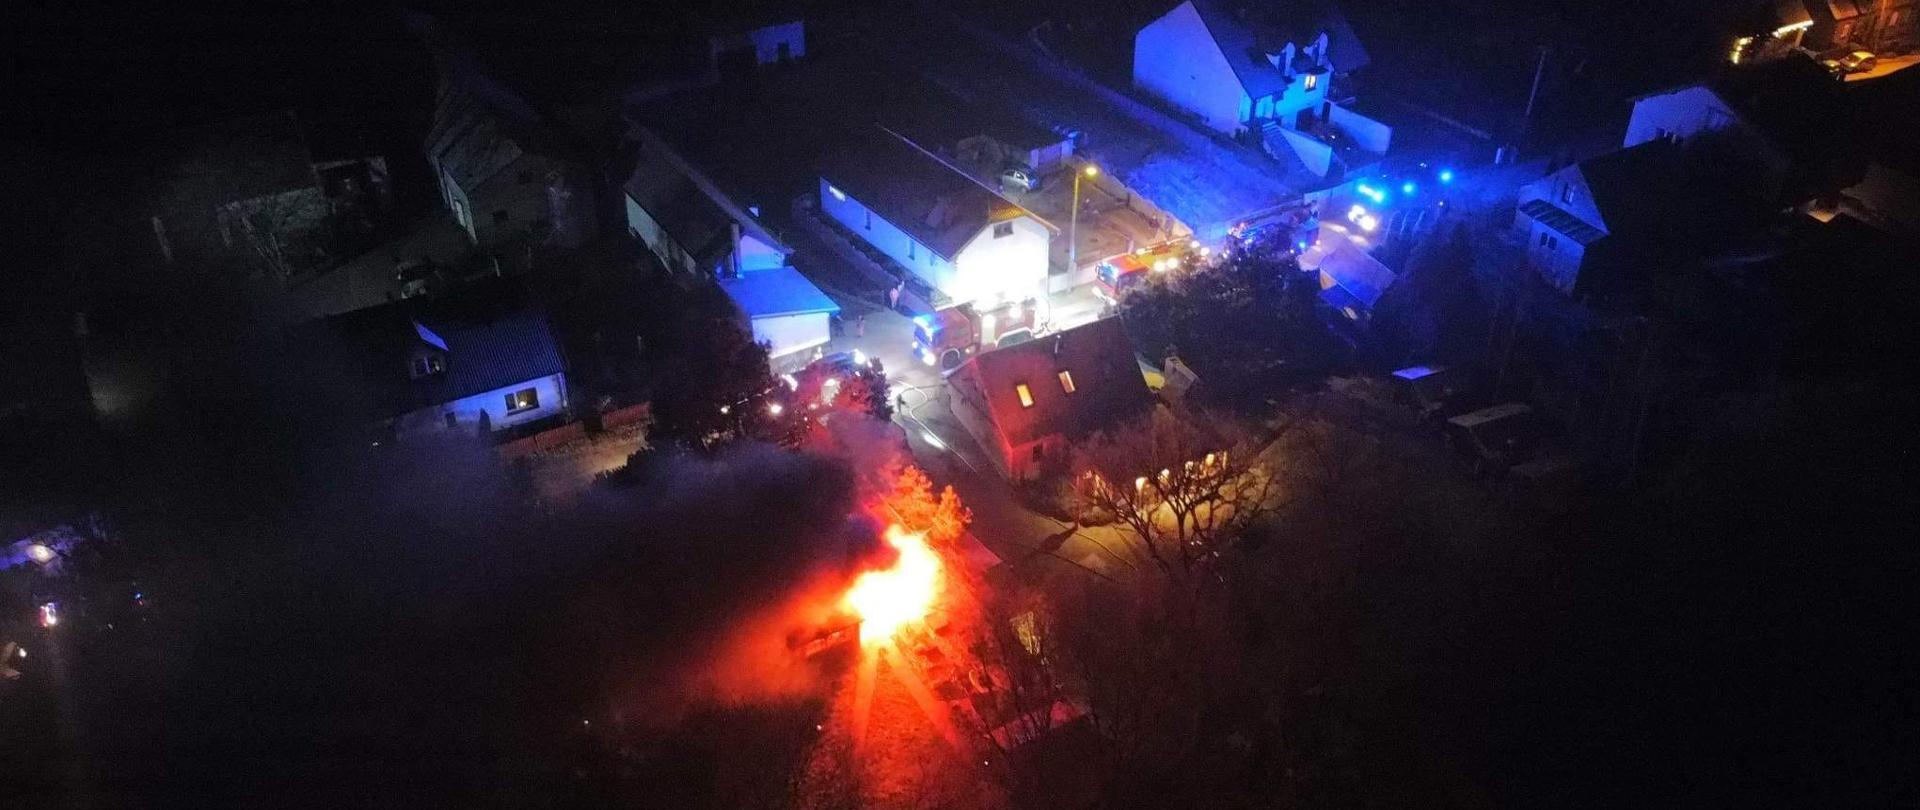 Zdjęcie z lotu ptaka, widać ogień przy budynku, w oddali kilka pojazdów na światłach błyskowych, jest noc